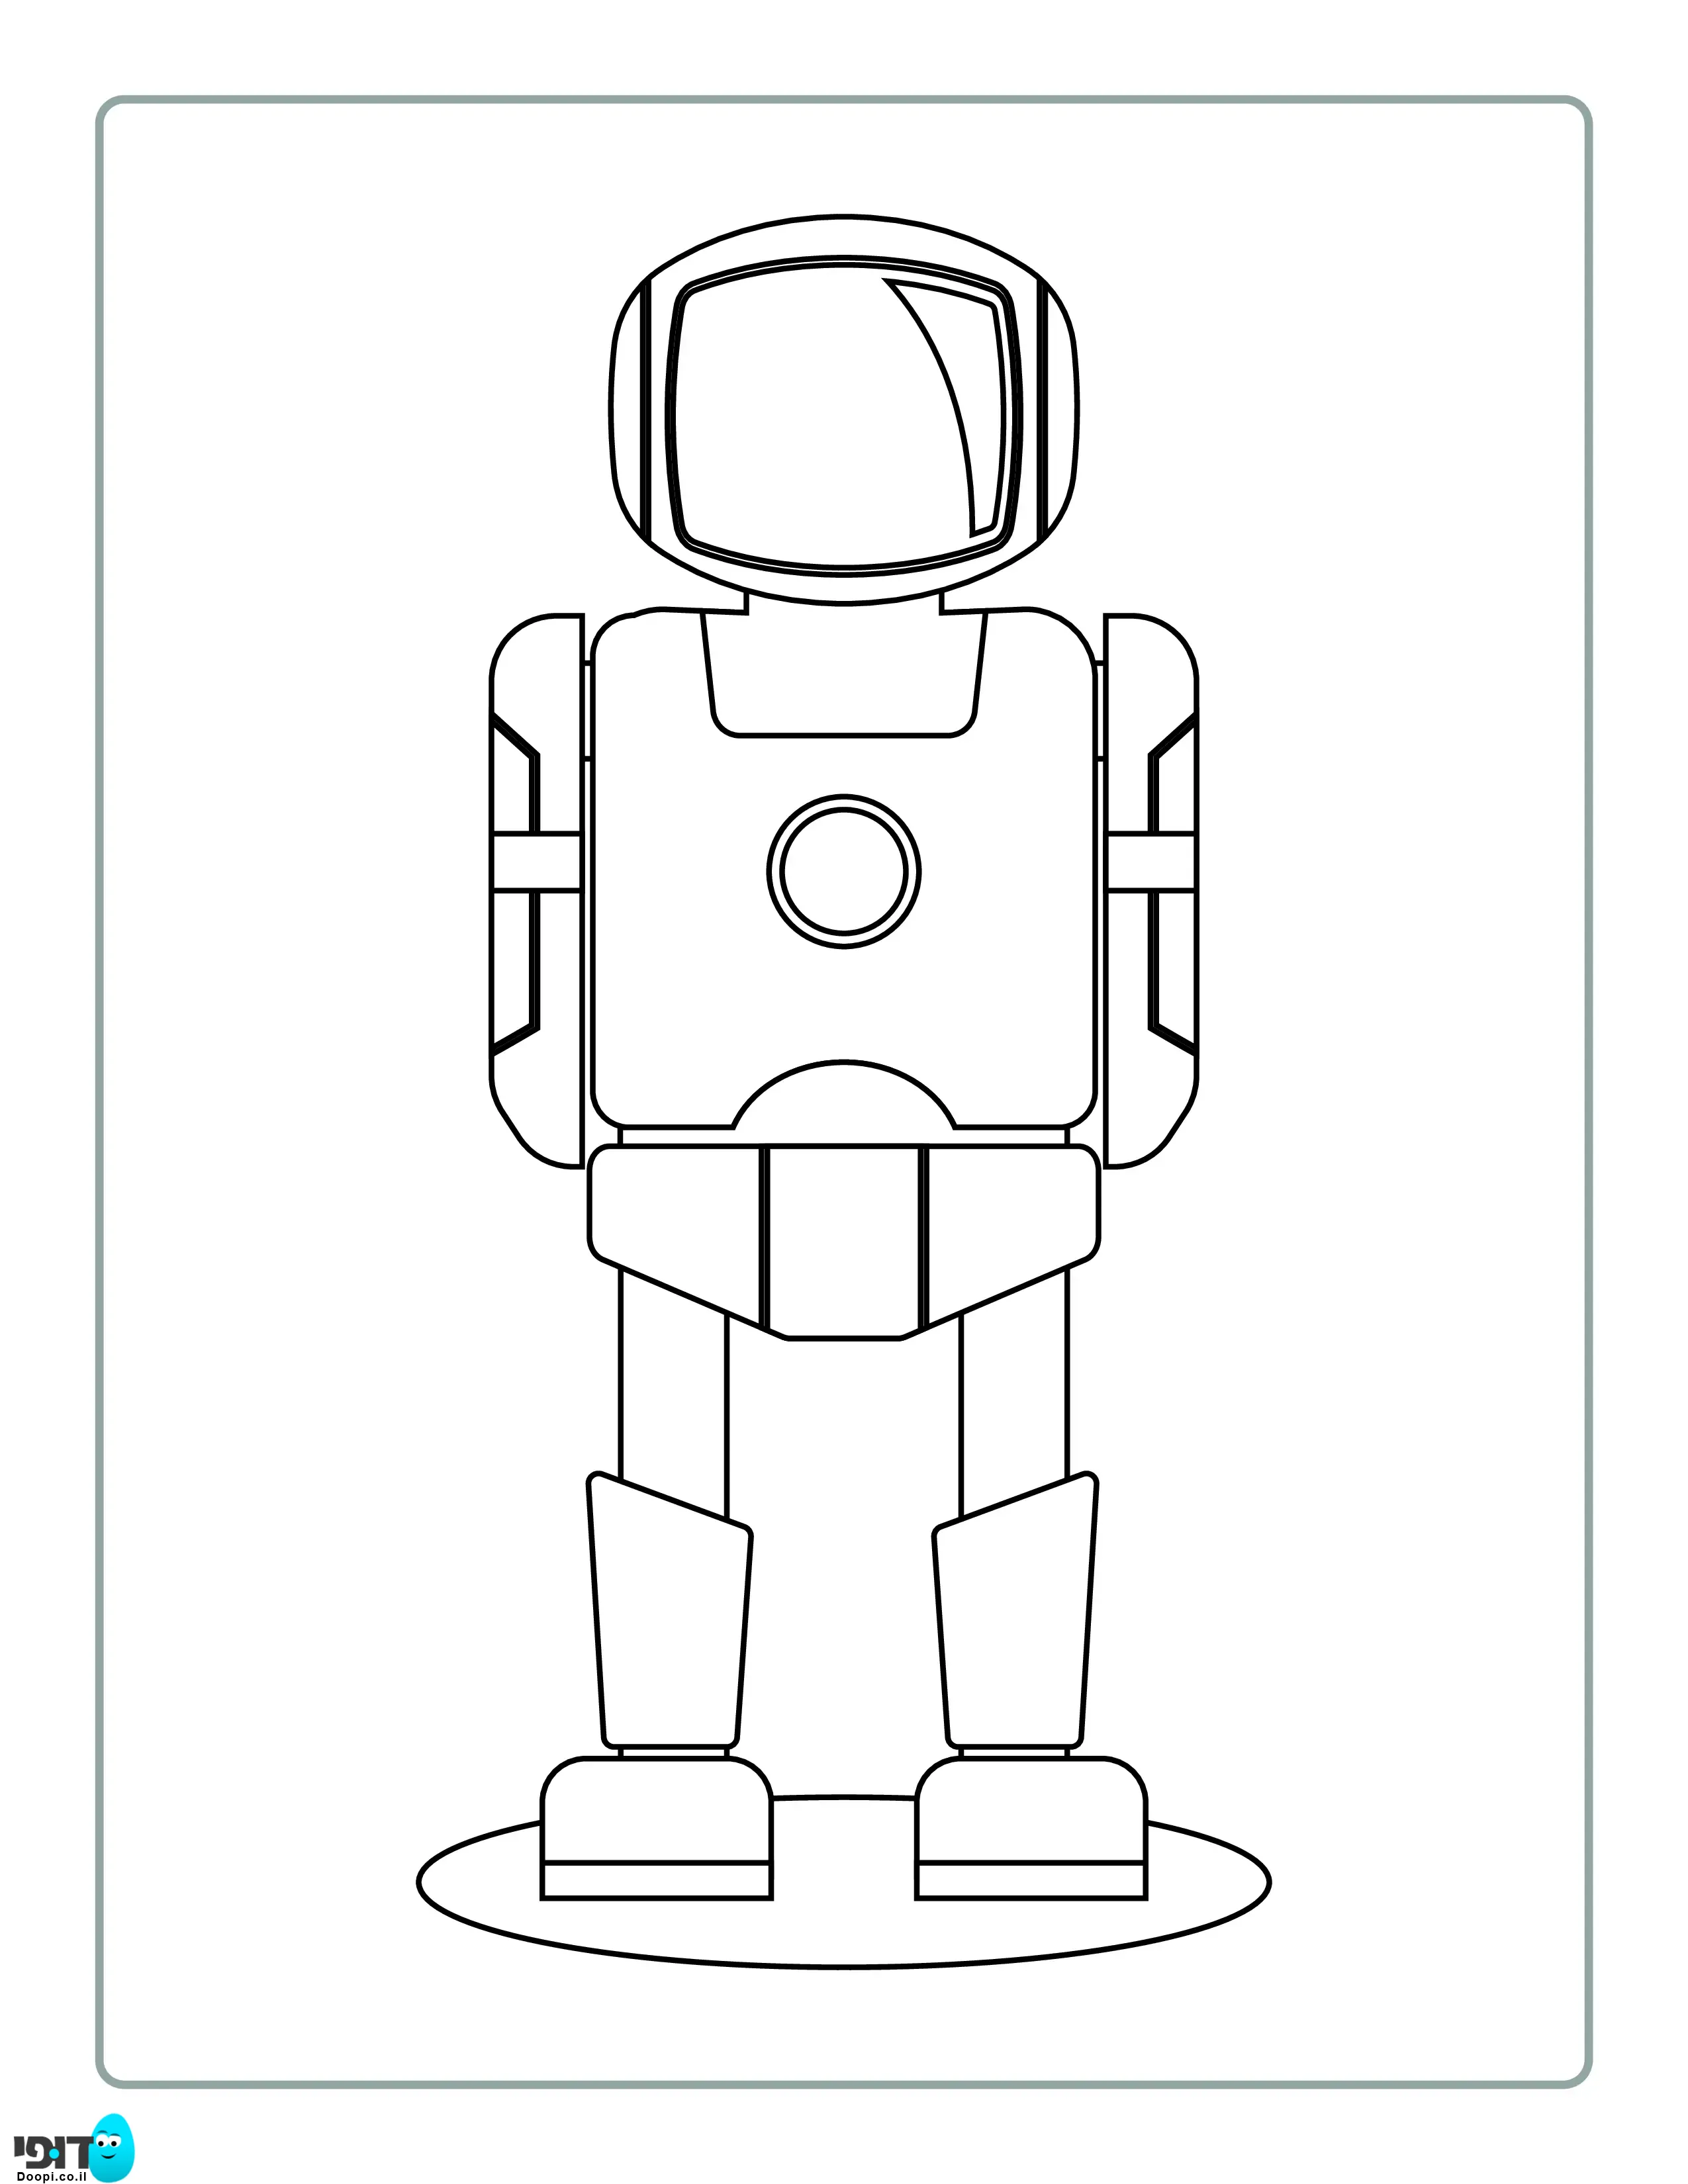 דף צביעה רובוט חליפה להדפסה